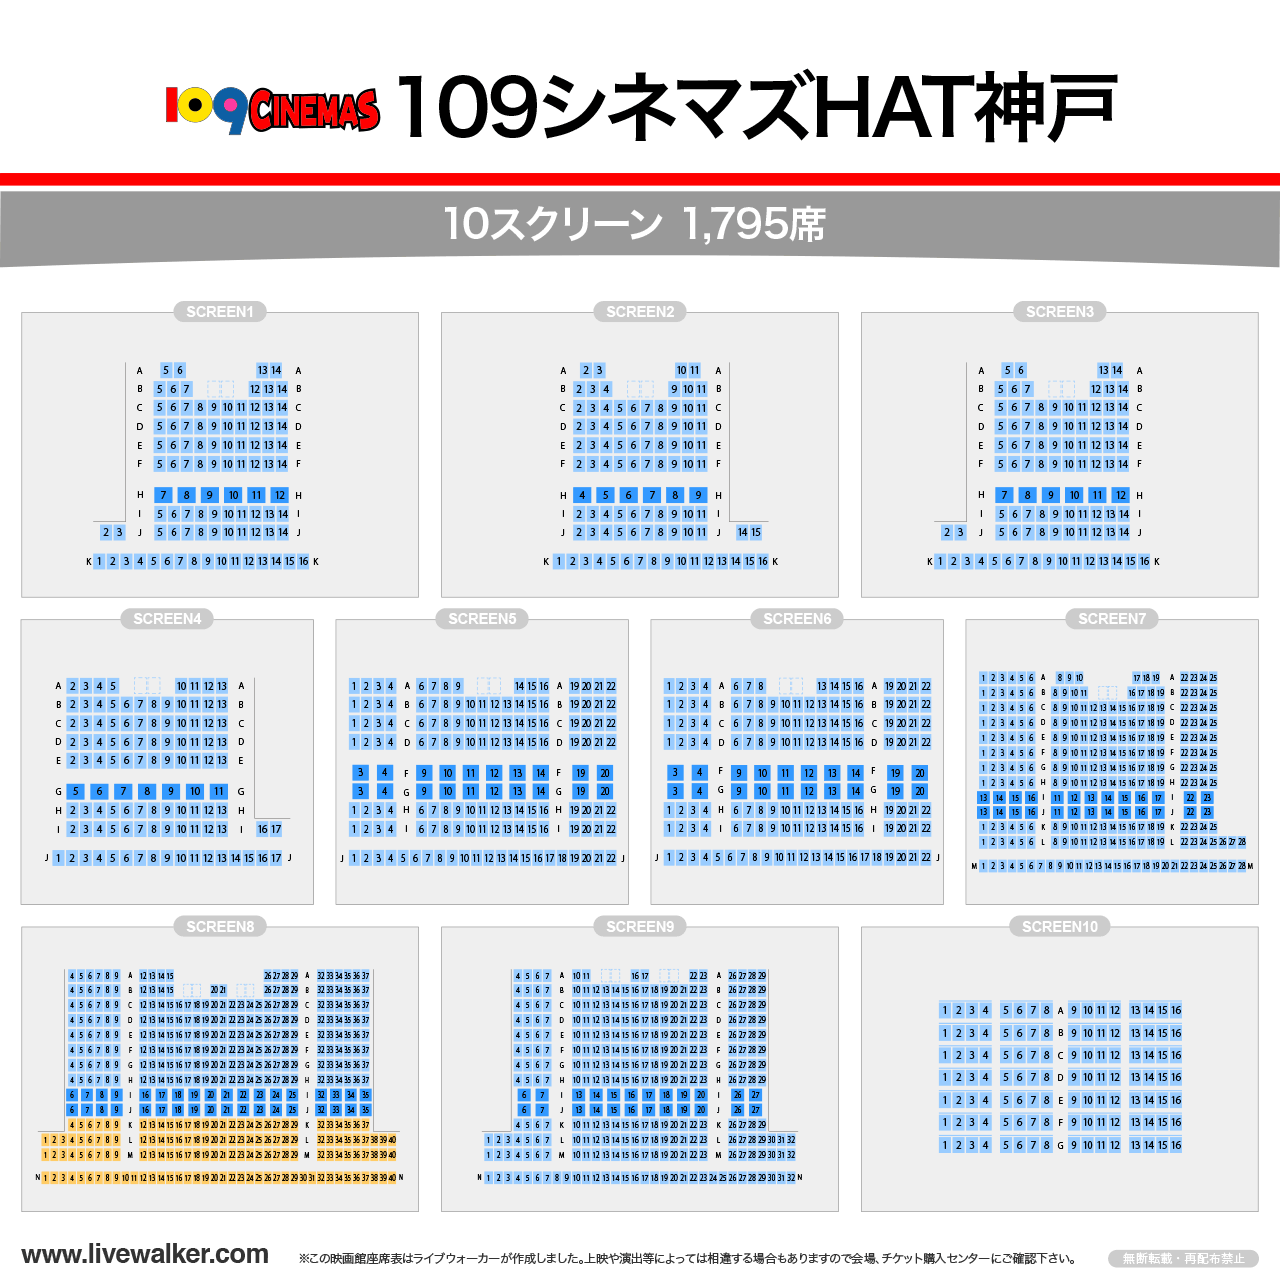 109シネマズHAT神戸シアターの座席表